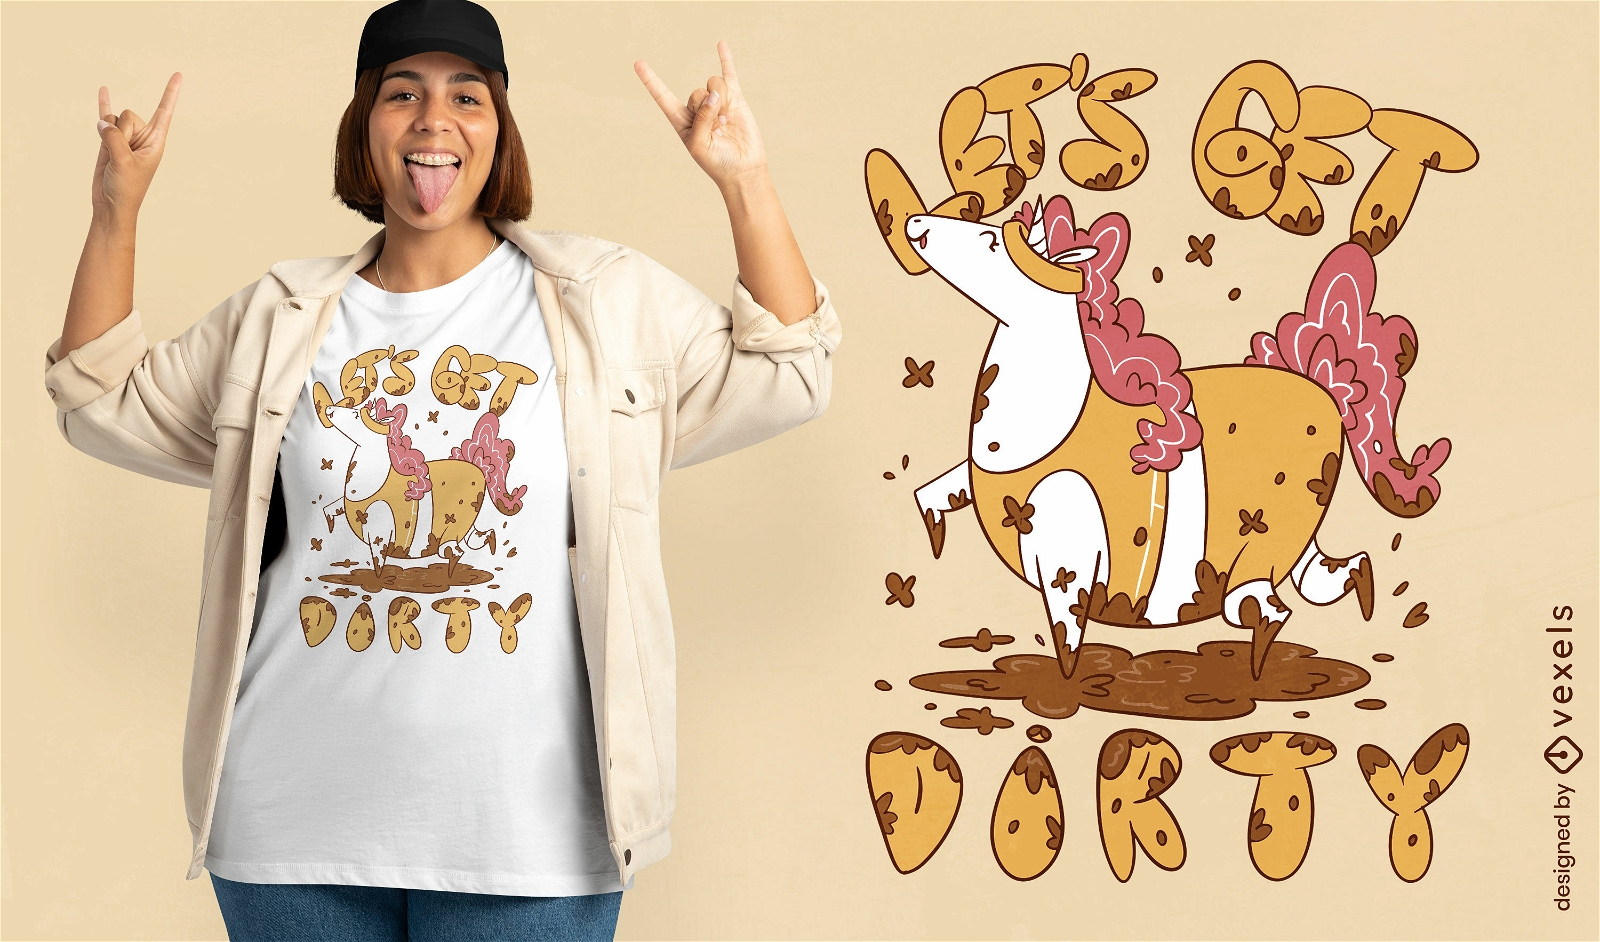 Vamos a ensuciar el diseño divertido de la camiseta del unicornio.